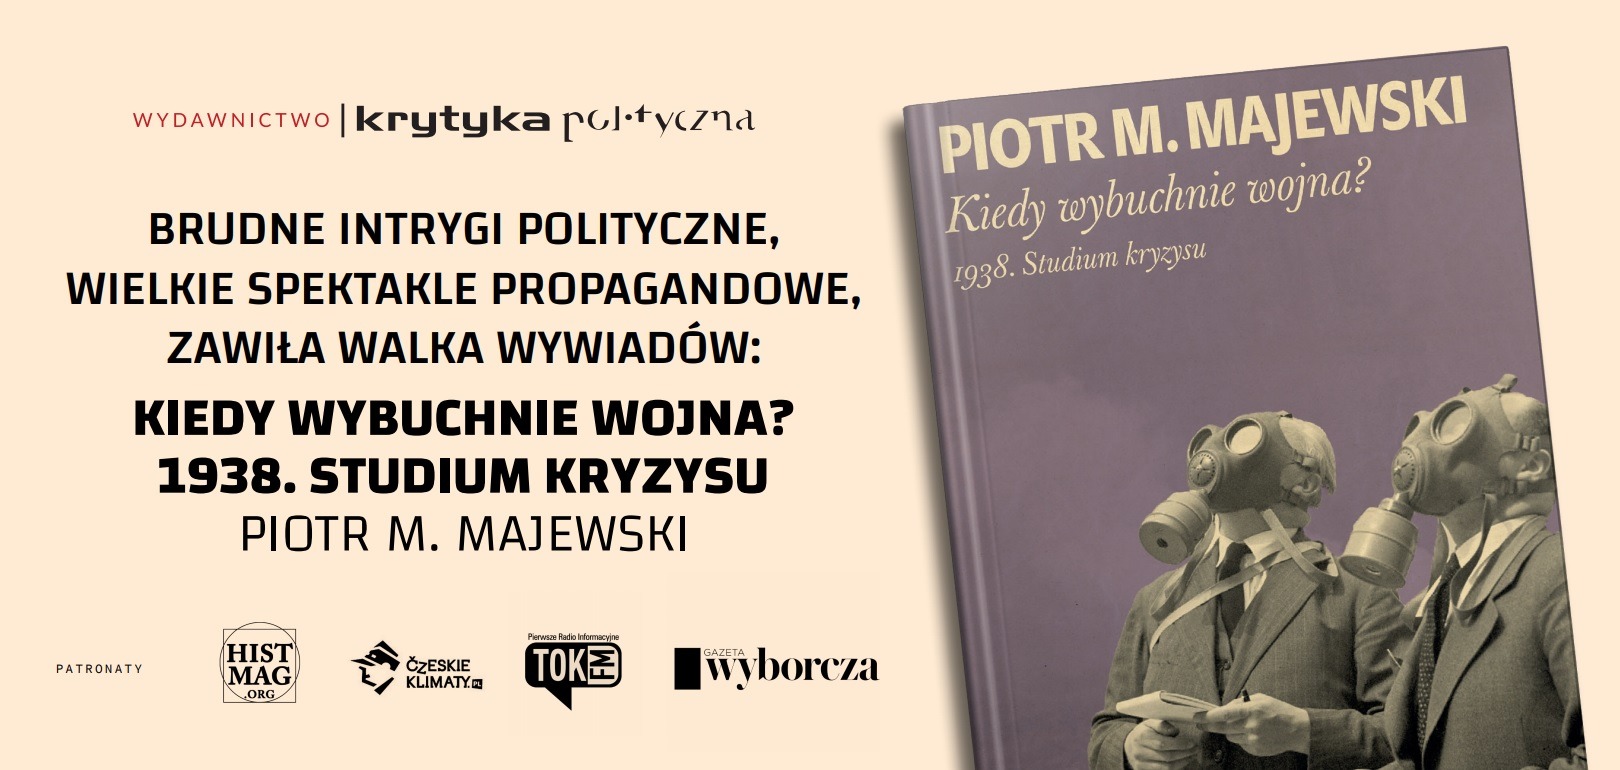 Spotkanie z Piotrem M. Majewskim - autorem książki "Kiedy wybuchnie wojna?"